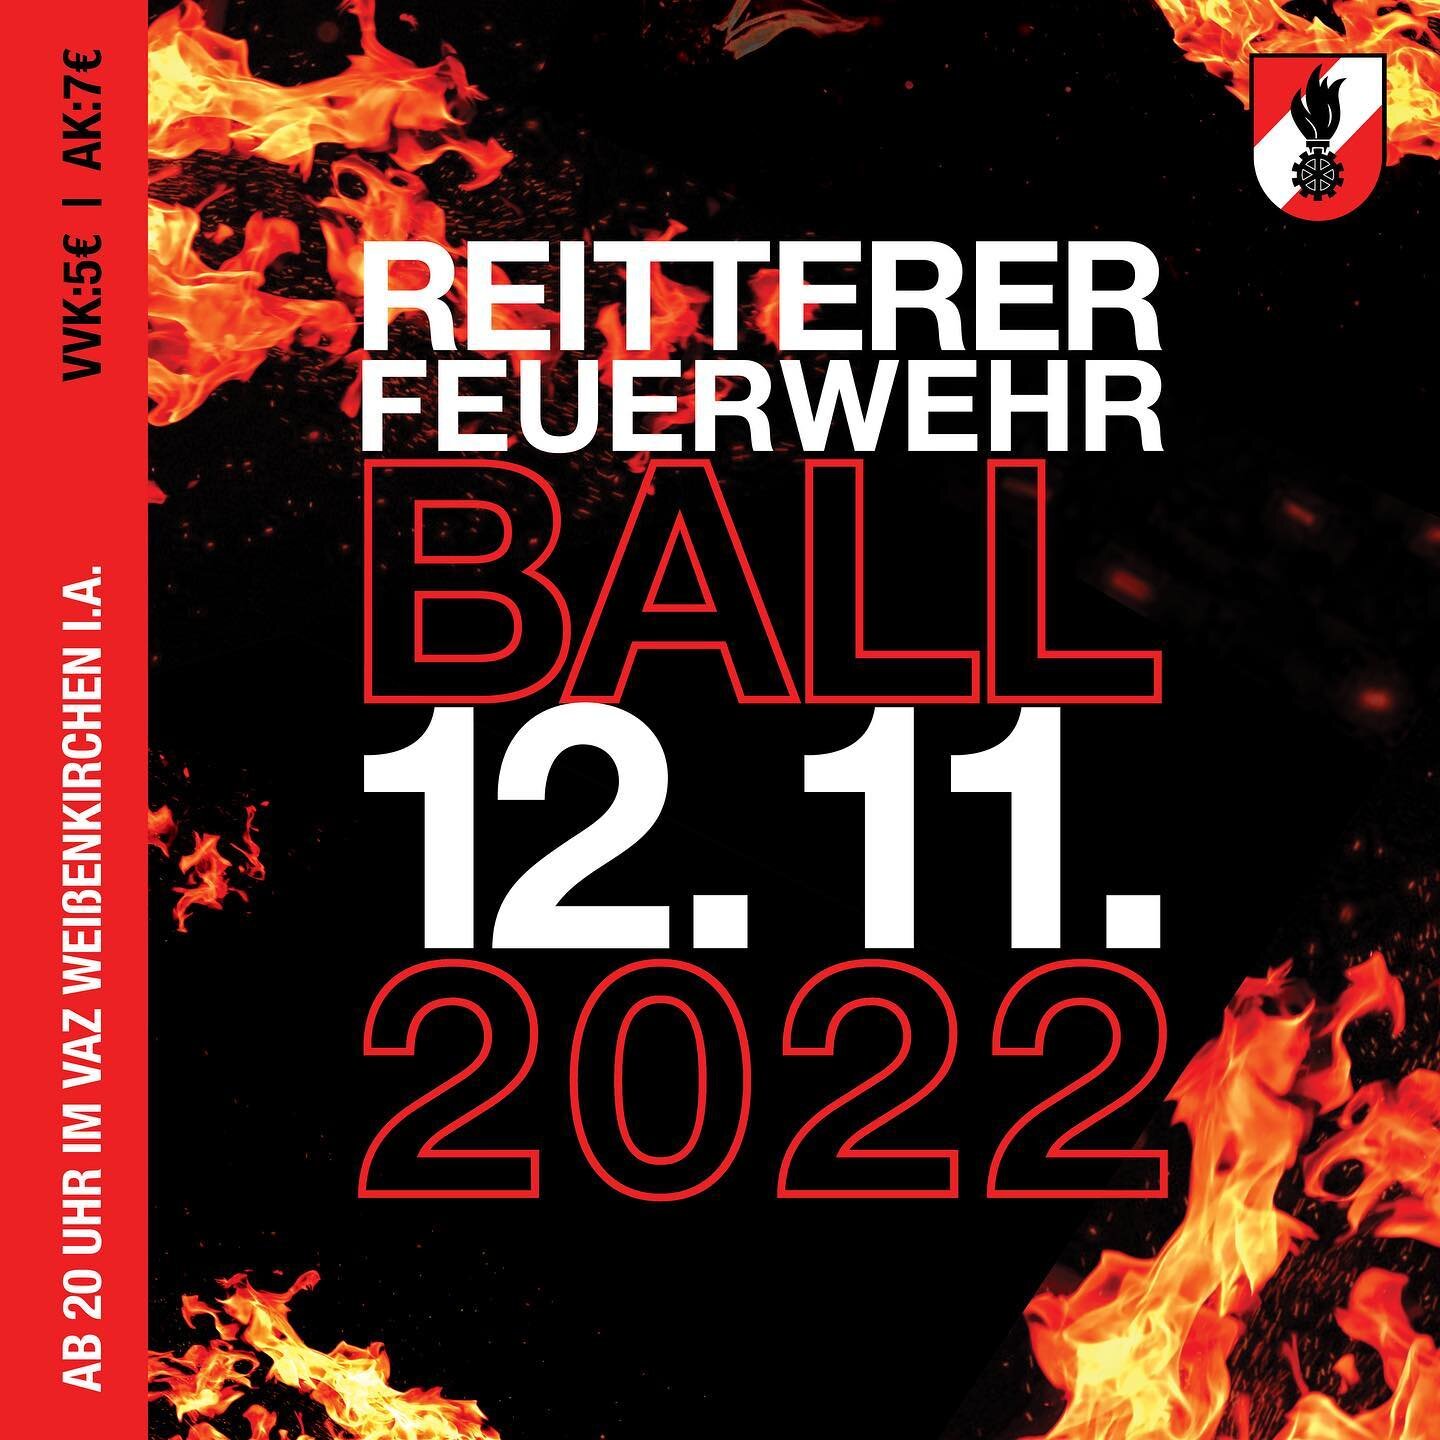 Am 12.11.2022 ist es endlich wieder soweit! Der Reitterer Feuerwehrball findet nach einer 2-j&auml;hrigen Pause wieder statt! 🥳

Wer freut sich schon darauf? 🤩🍻

#grafikdesign #flyerdesign #feuerwehr #ffreittern @ff.reittern